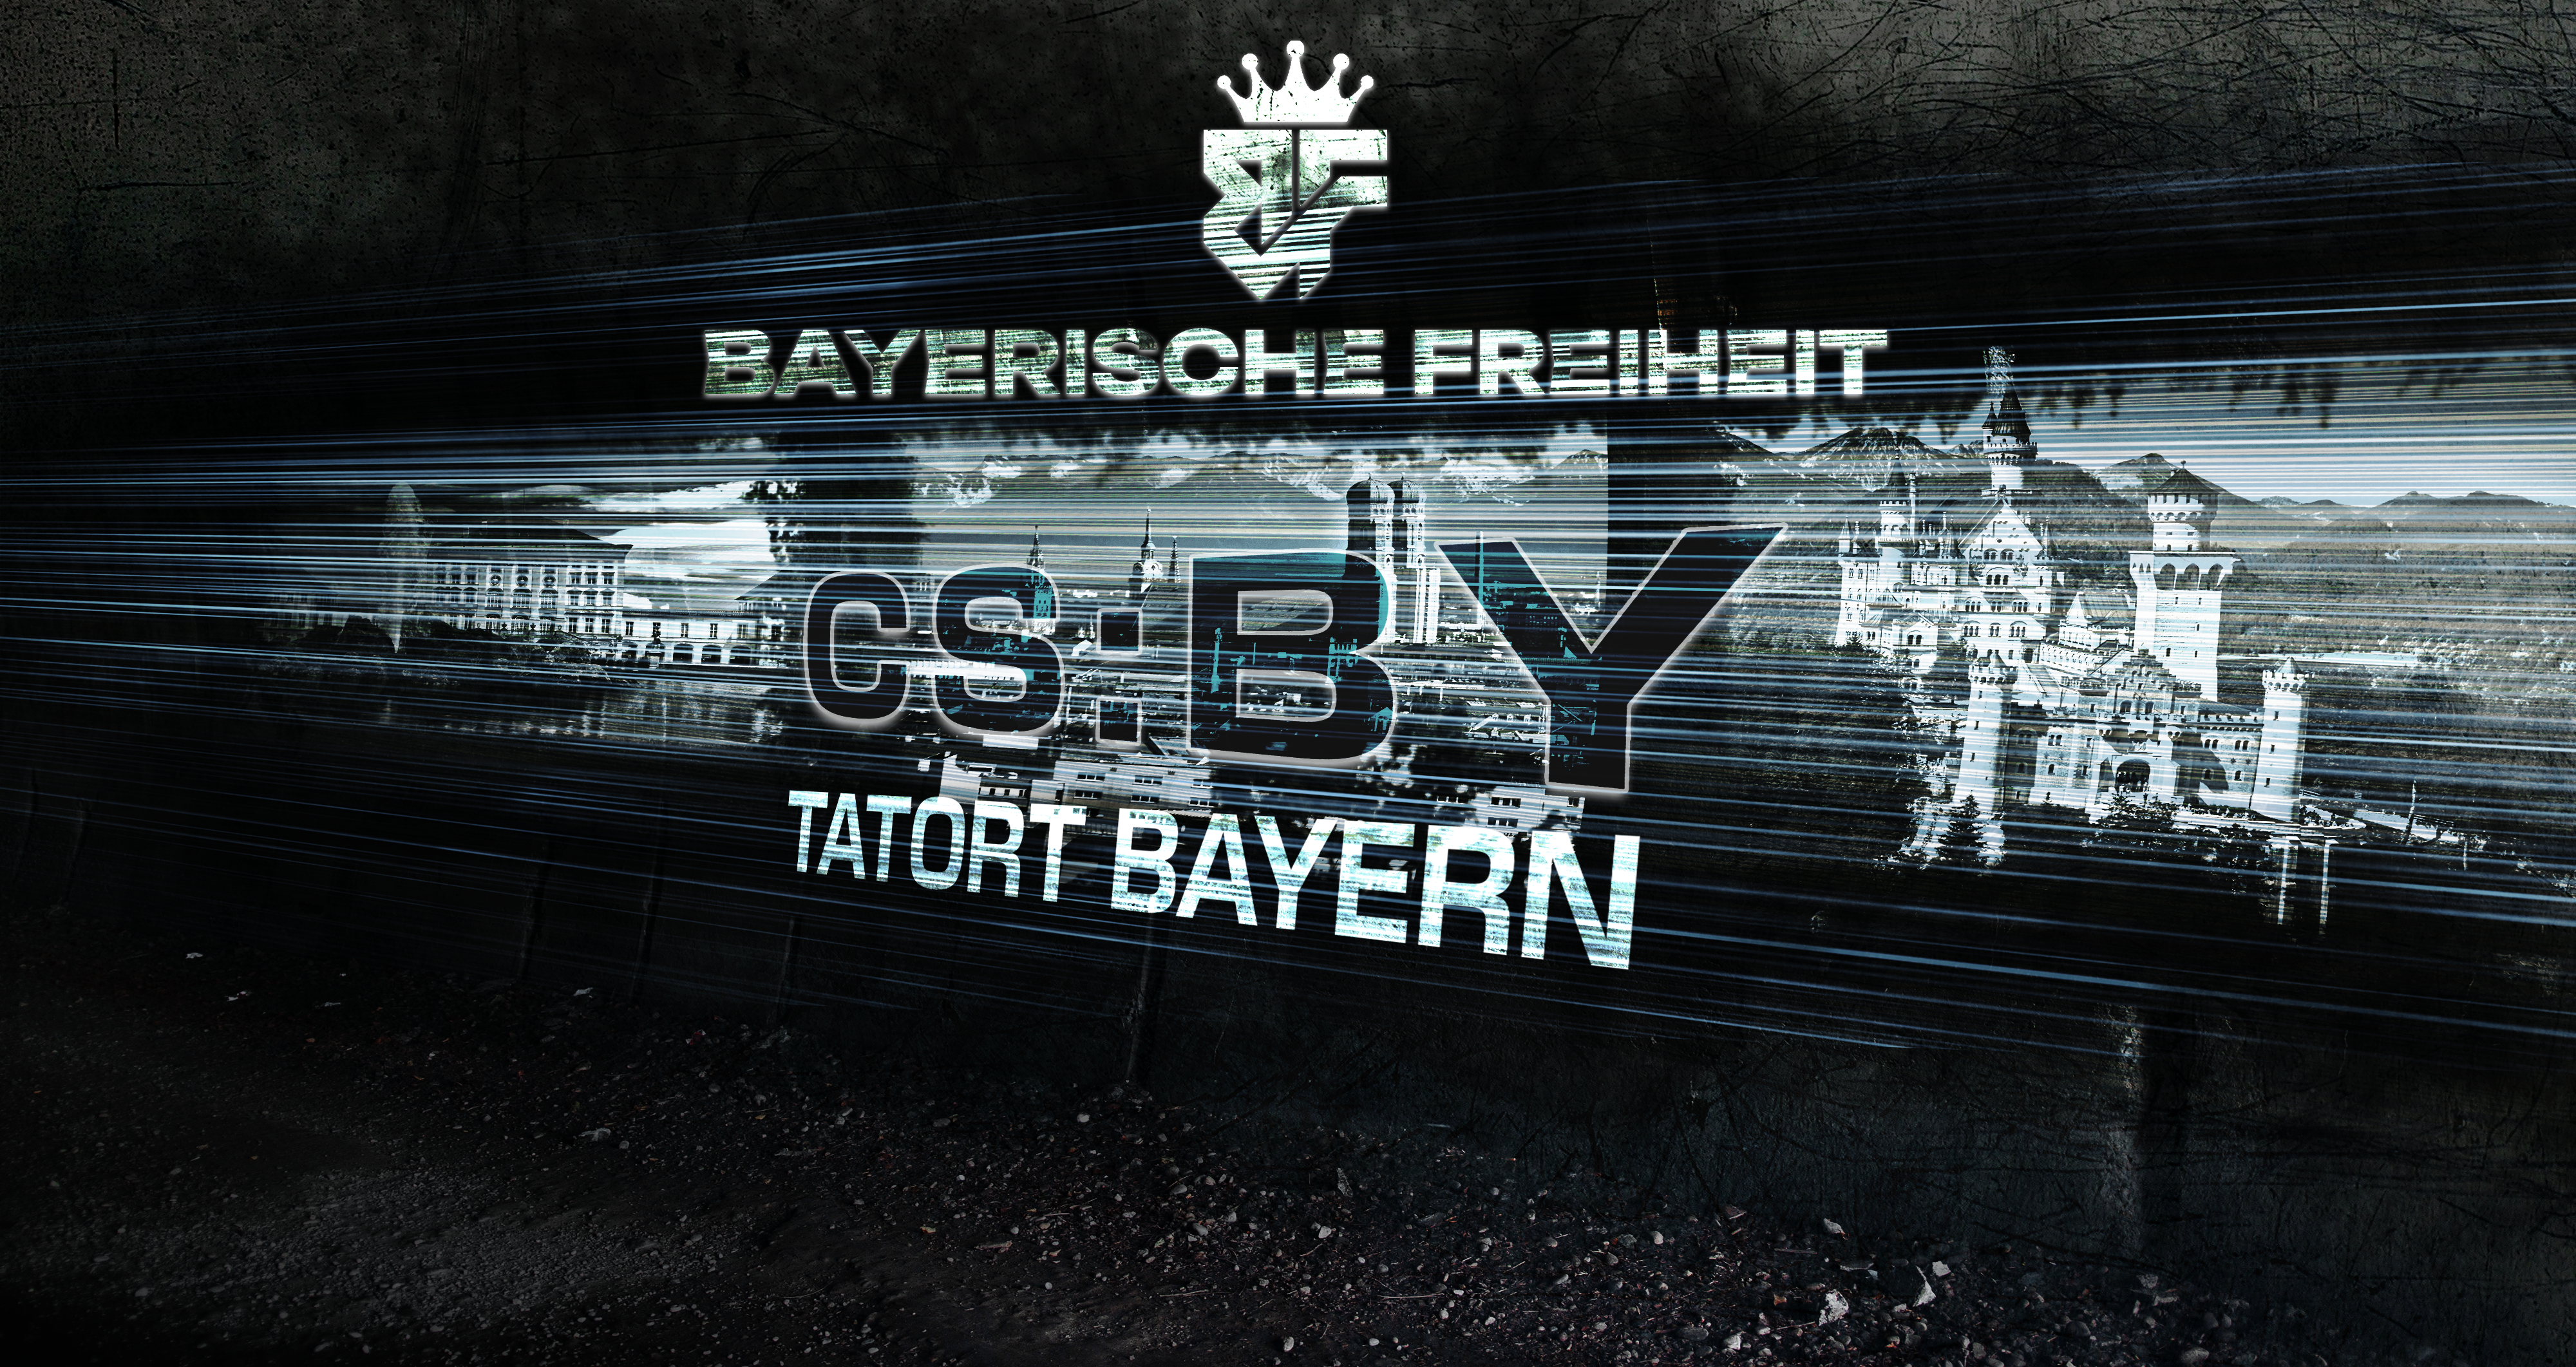 Bayerische Freiheit – Episode 1 – Tatort Bayern